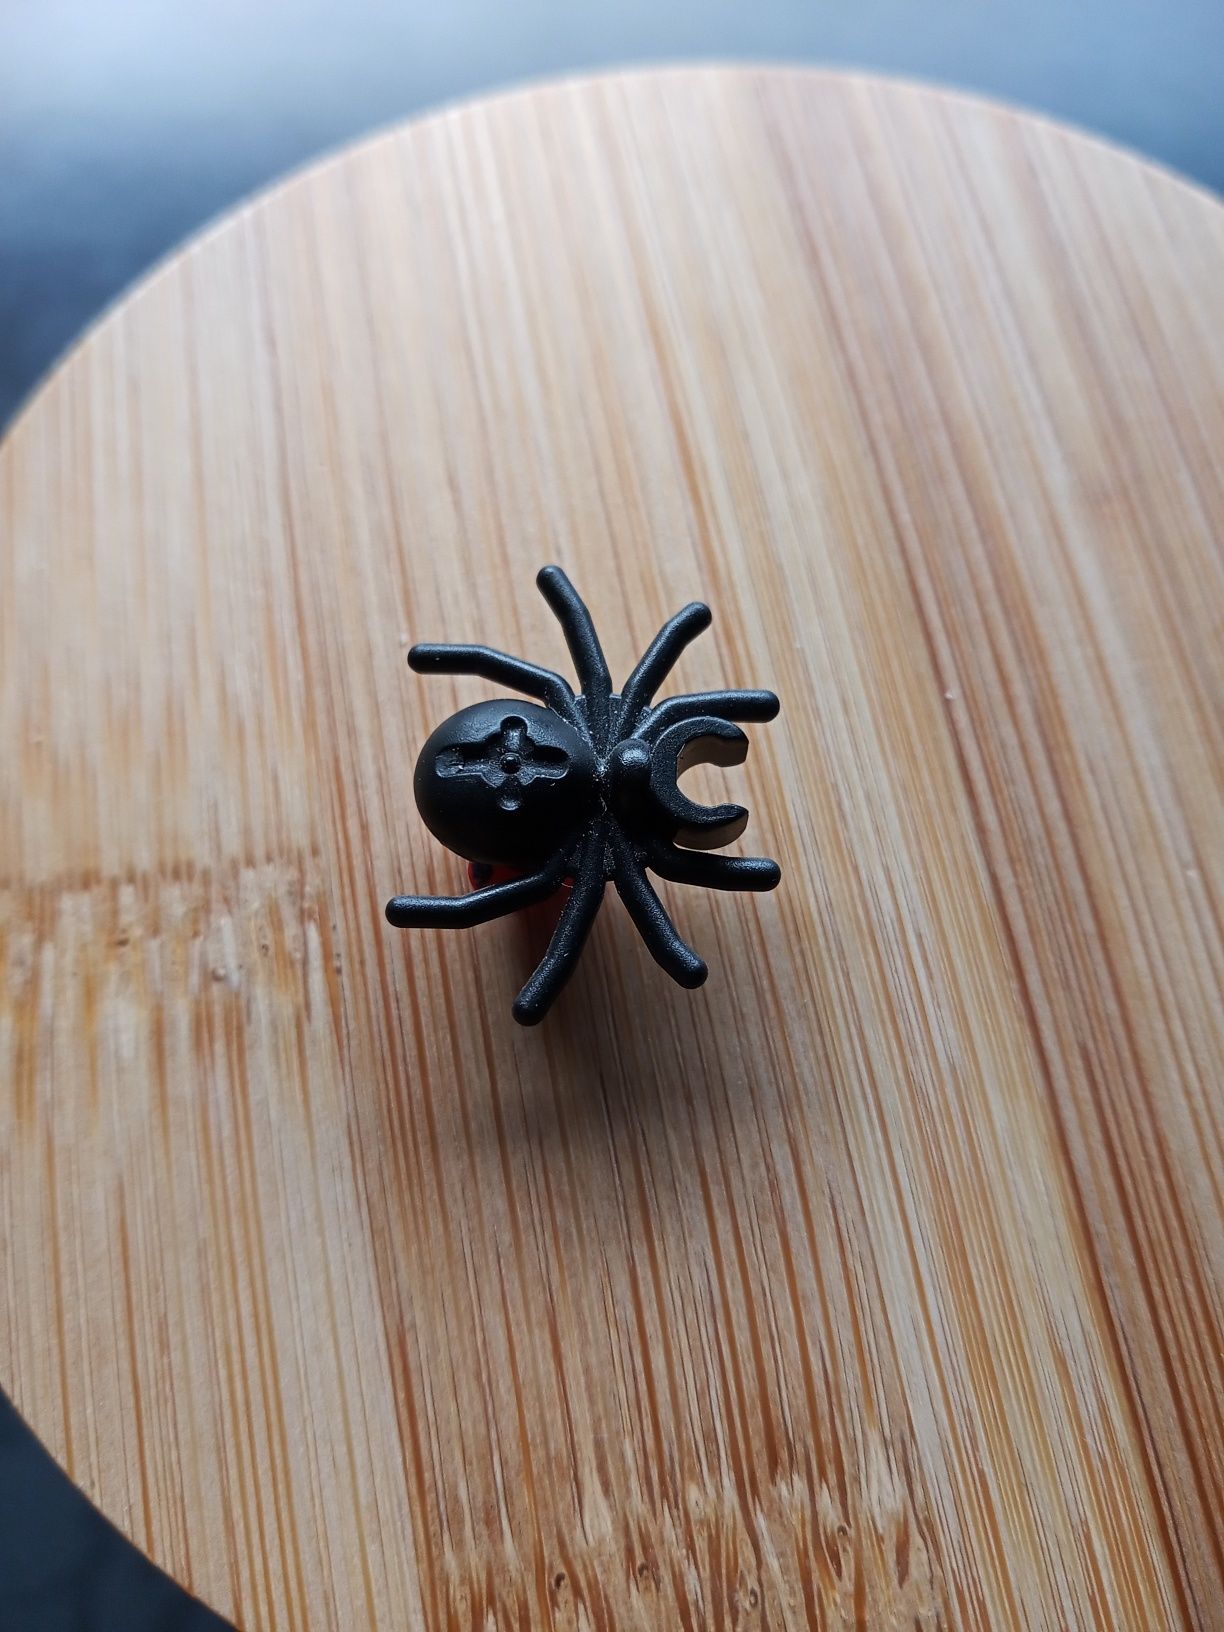 Pająk LEGO akcesoria do LEGO czarny pająk krzyżak